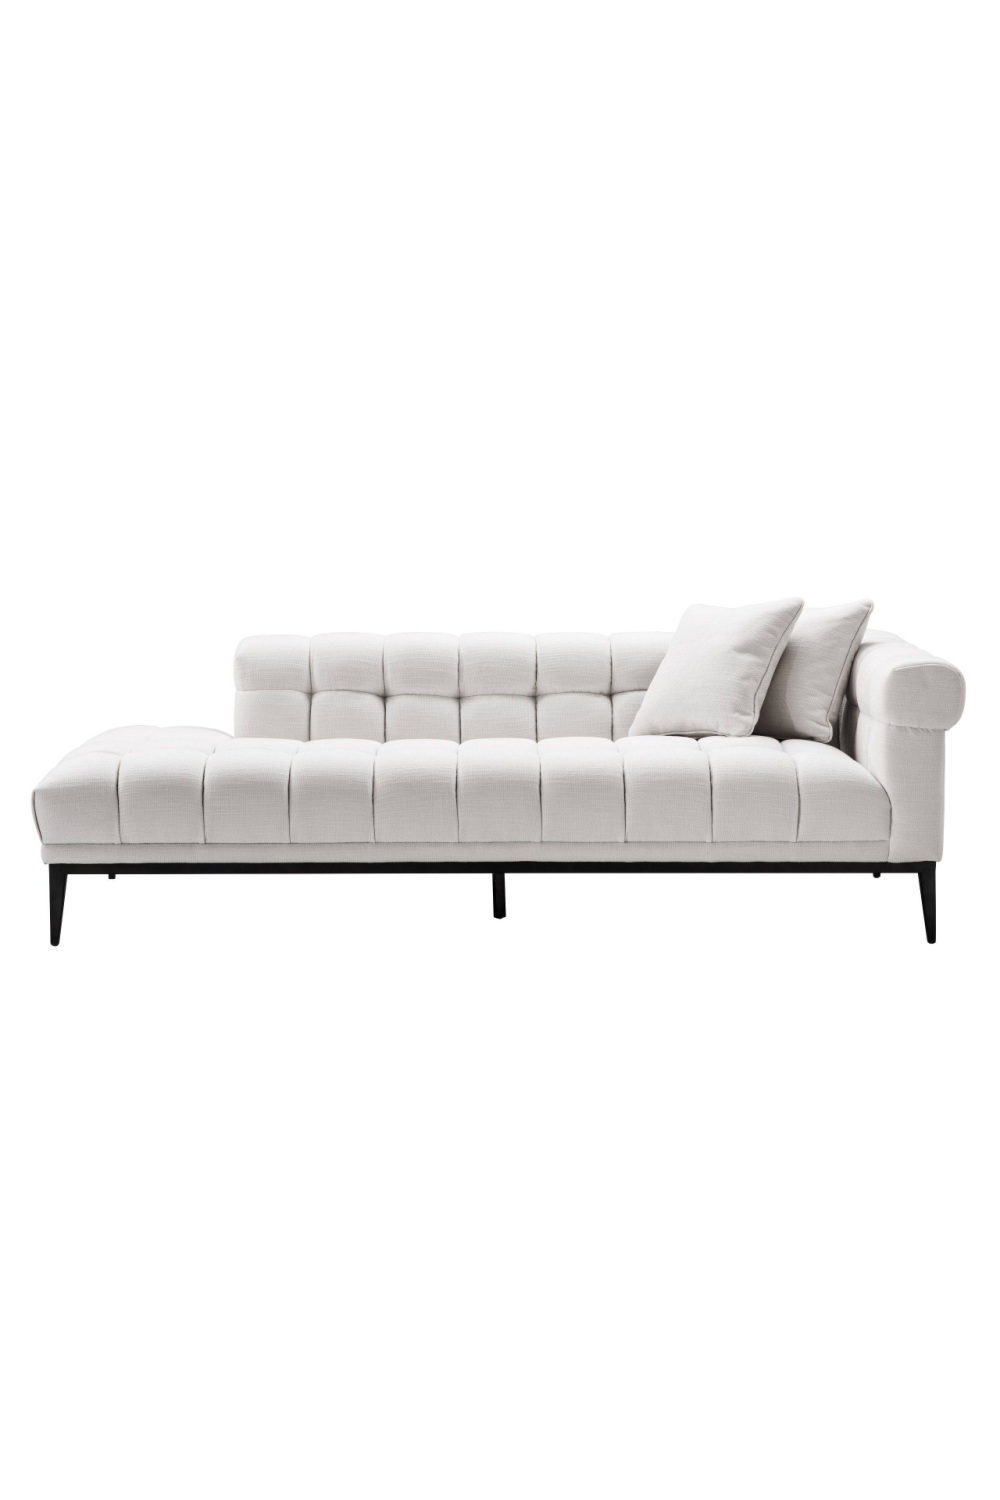 White Tufted Sofa | Eichholtz Aurelio | Oroa.com